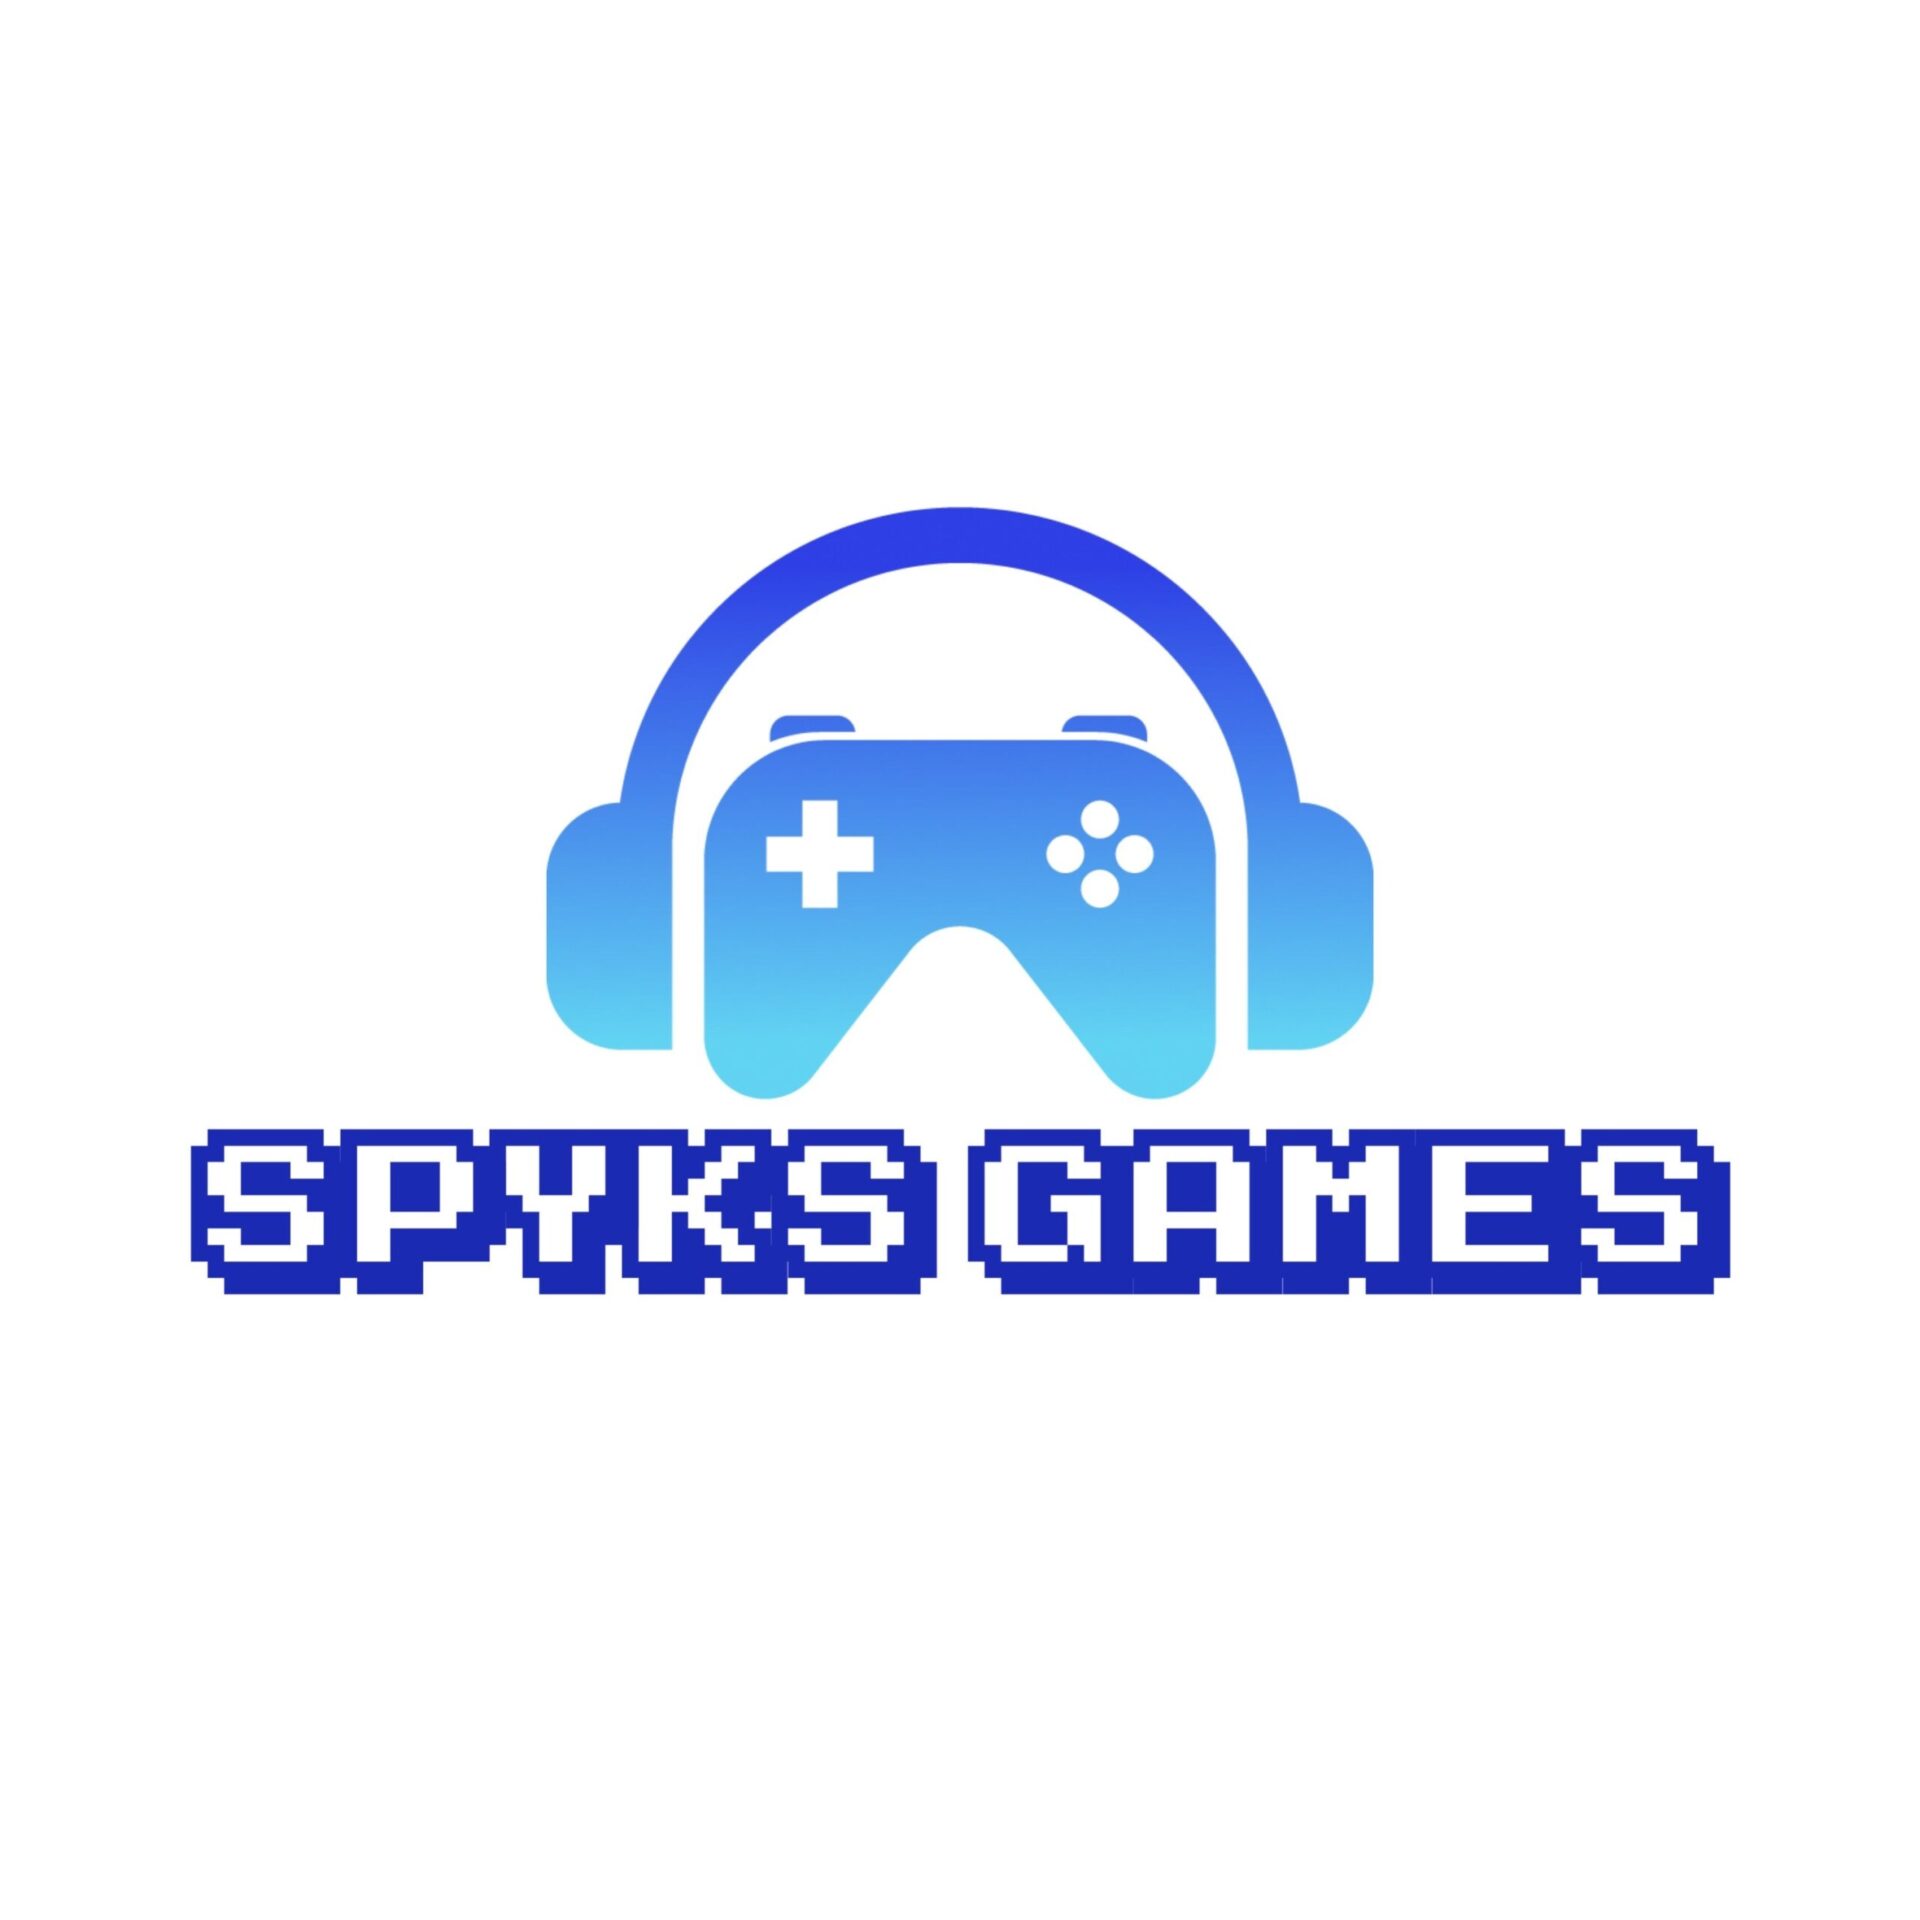 Spyksゲームブログ ロゴ